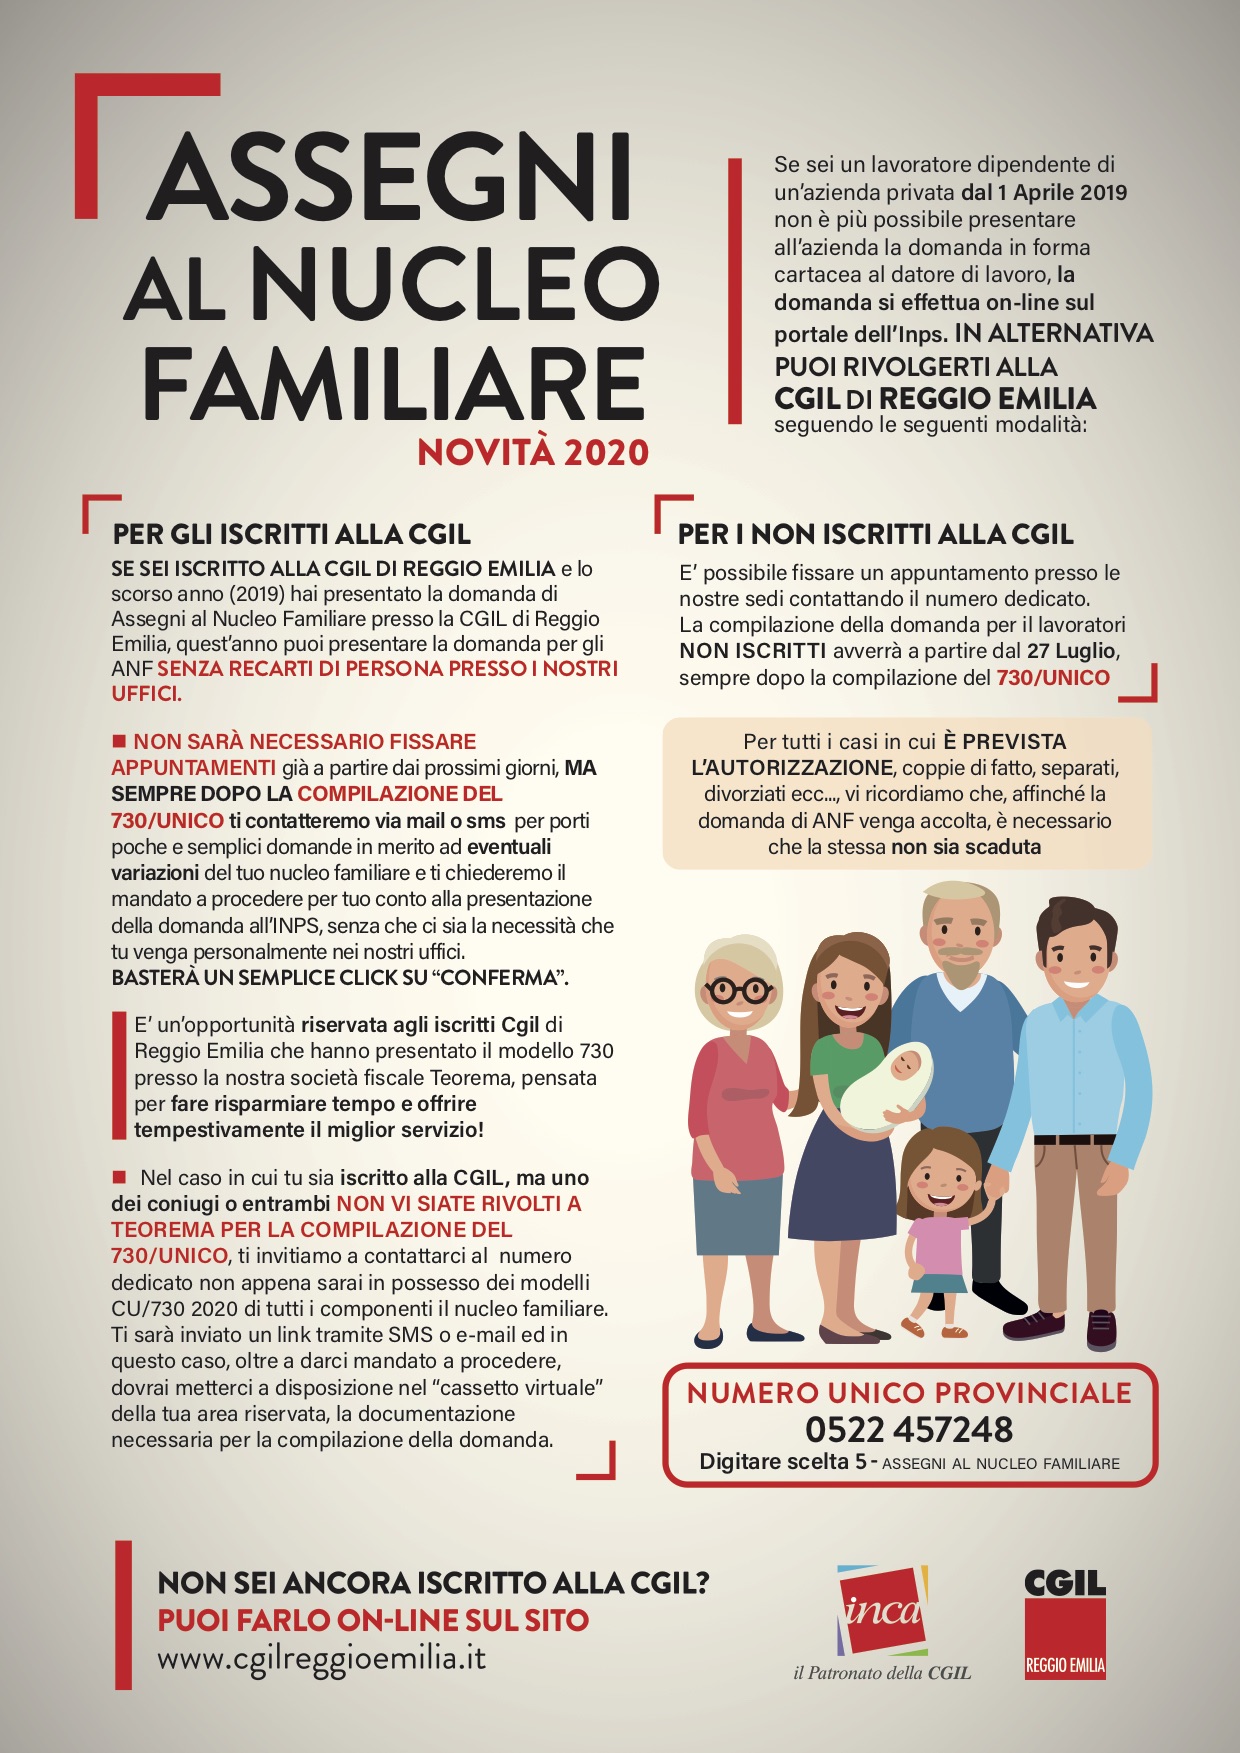 Assegni Al Nucleo Famigliare 2020 No Contatti Cgil Reggio Emilia